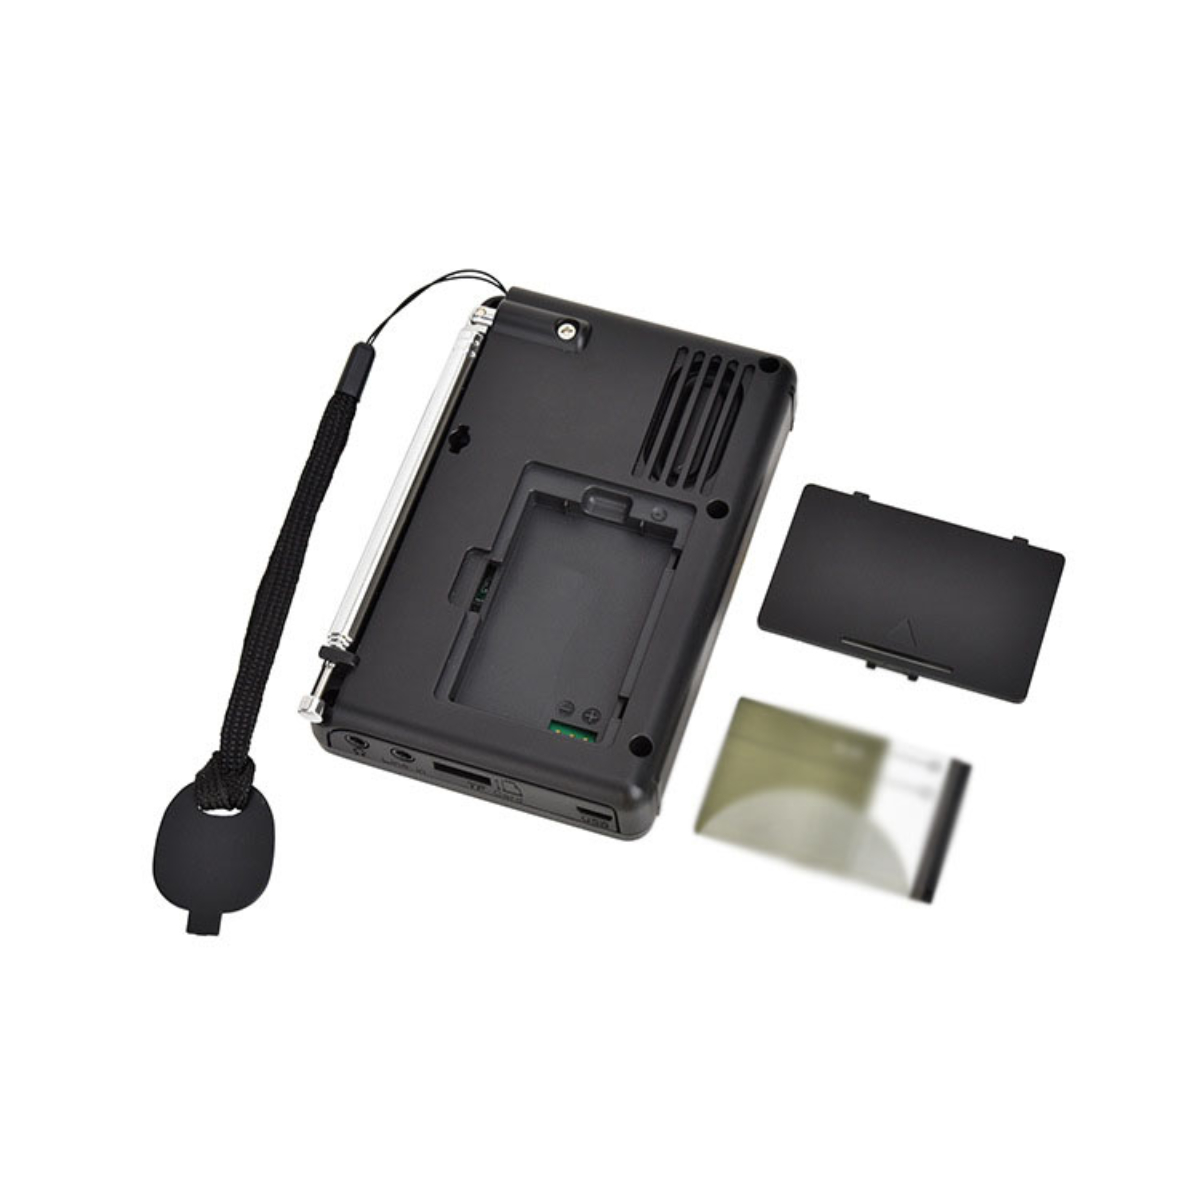 Karteneinschub, Austauschbare Schwarz Lithium-Batterie Radio, FM, -, FM, - und Bluetooth Stereo-Recorder ENBAOXIN AM, mit Vollband